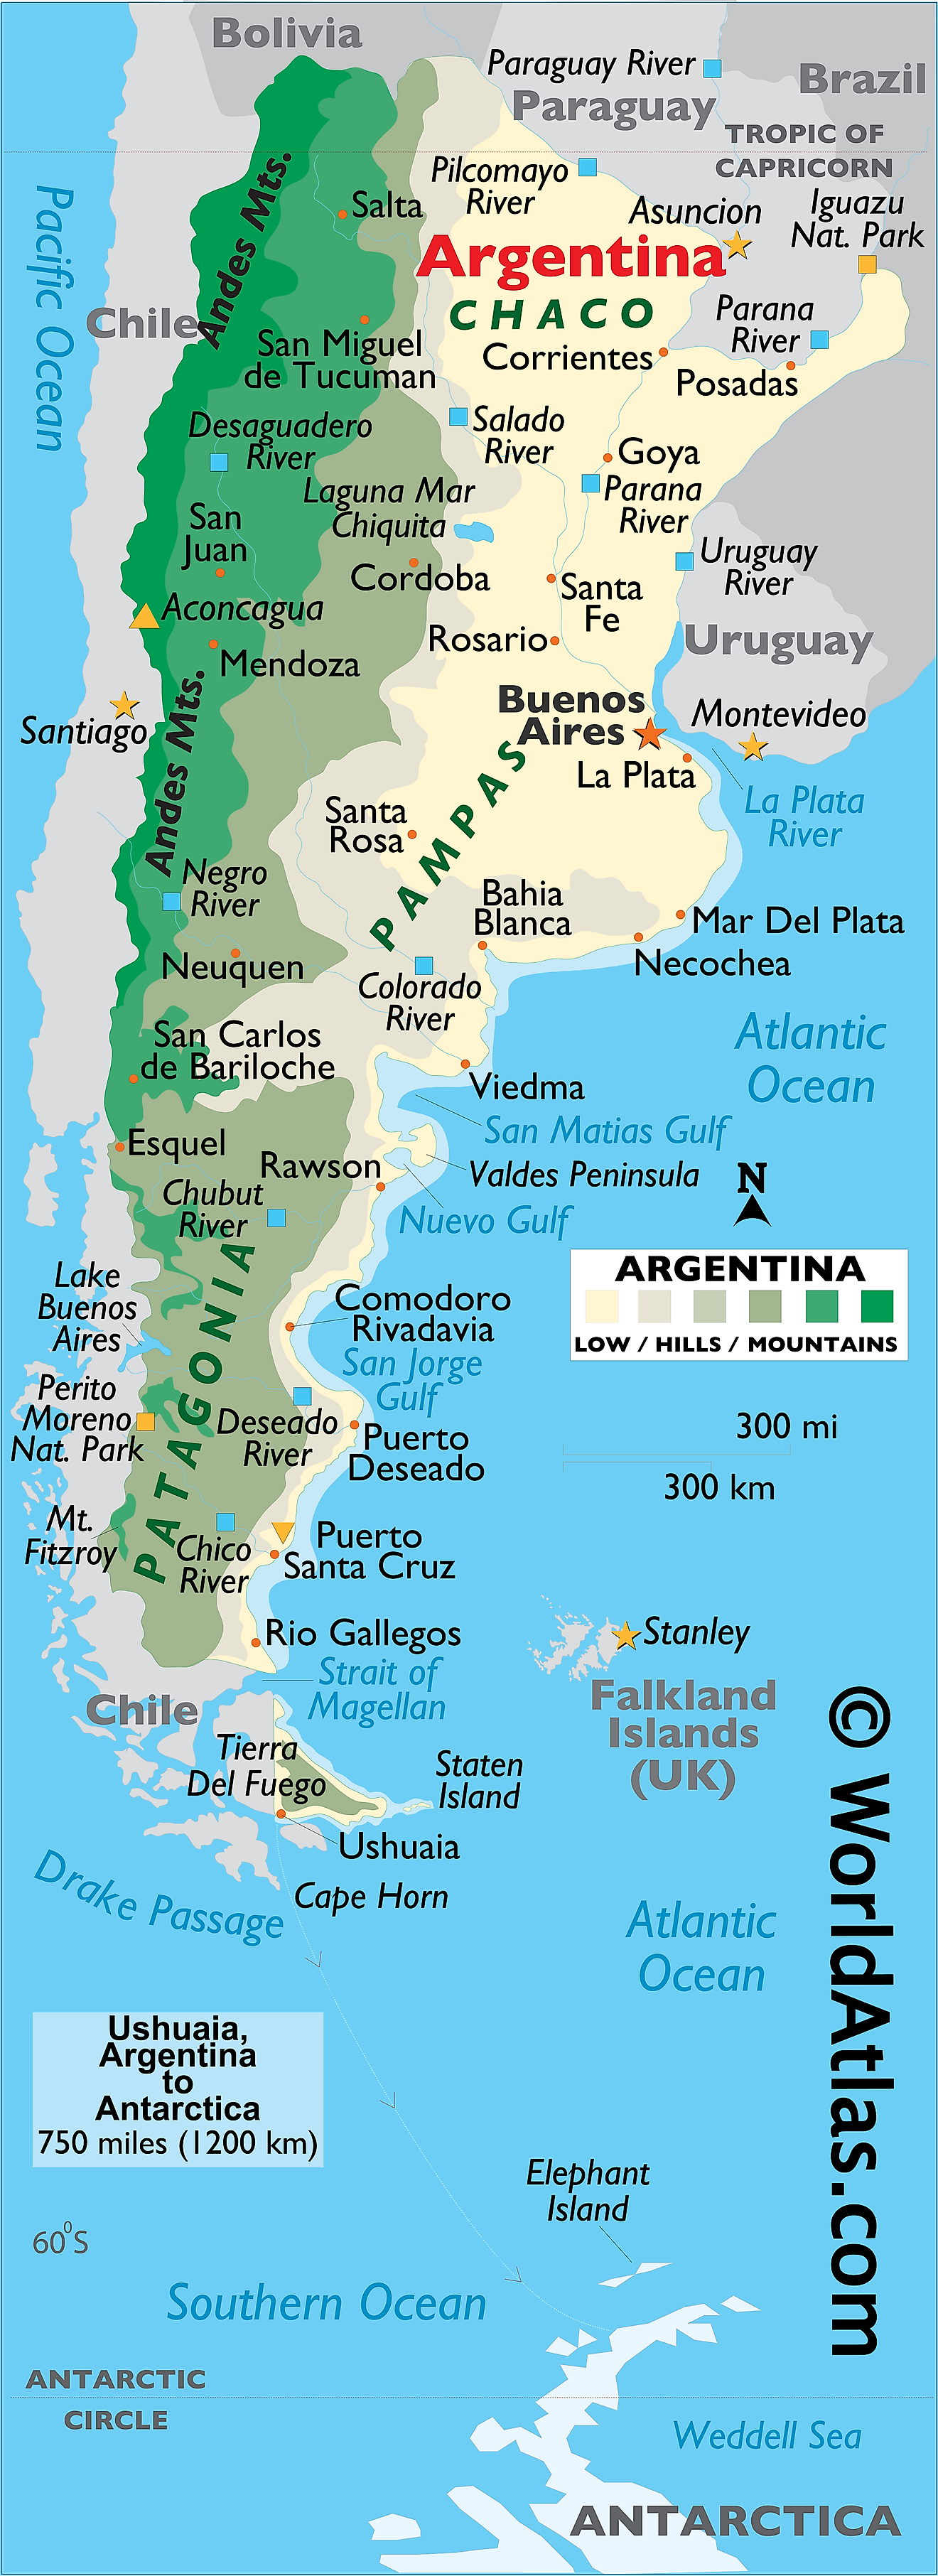 Mapa Físico de Argentina que muestra el relieve, las regiones patagónicas y pampeanas, los ríos, las cadenas montañosas, el Cabo de Hornos, los principales lagos, las ciudades importantes y más.